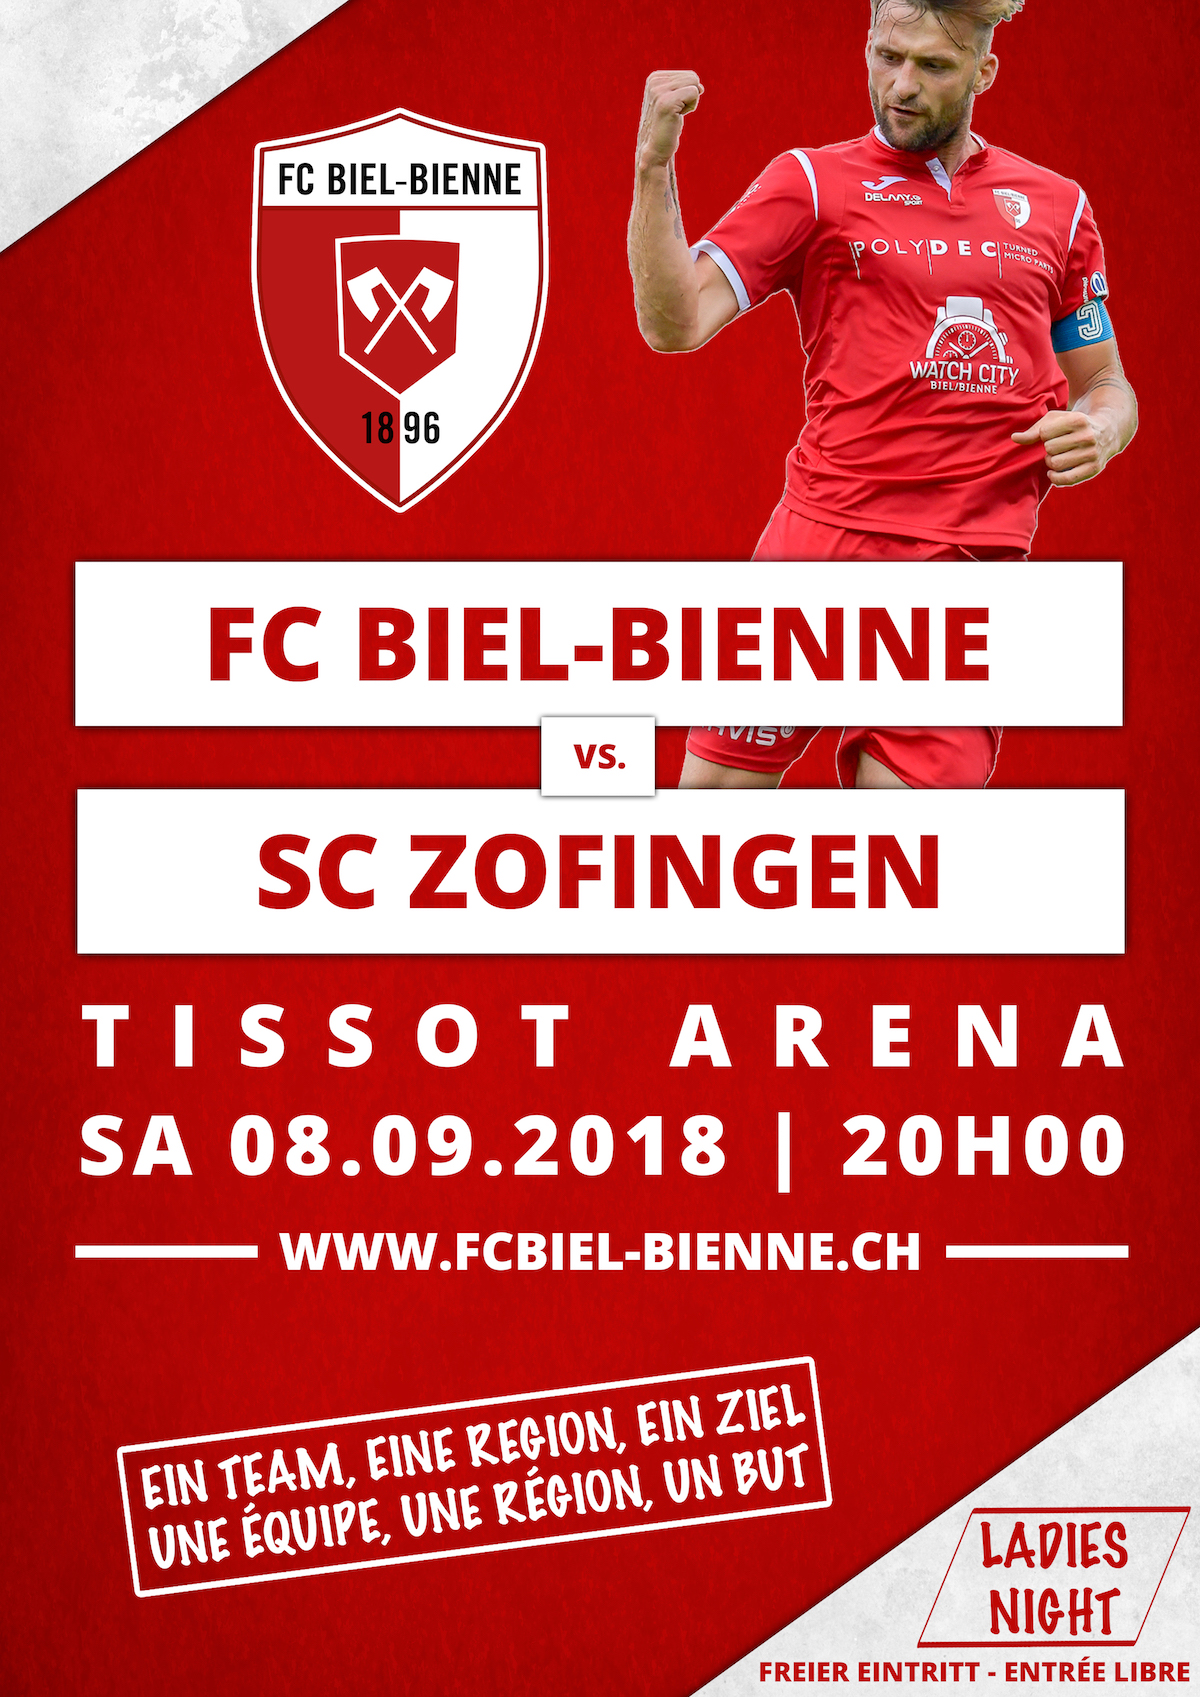 FC Biel-Bienne vs. SC Zofingen